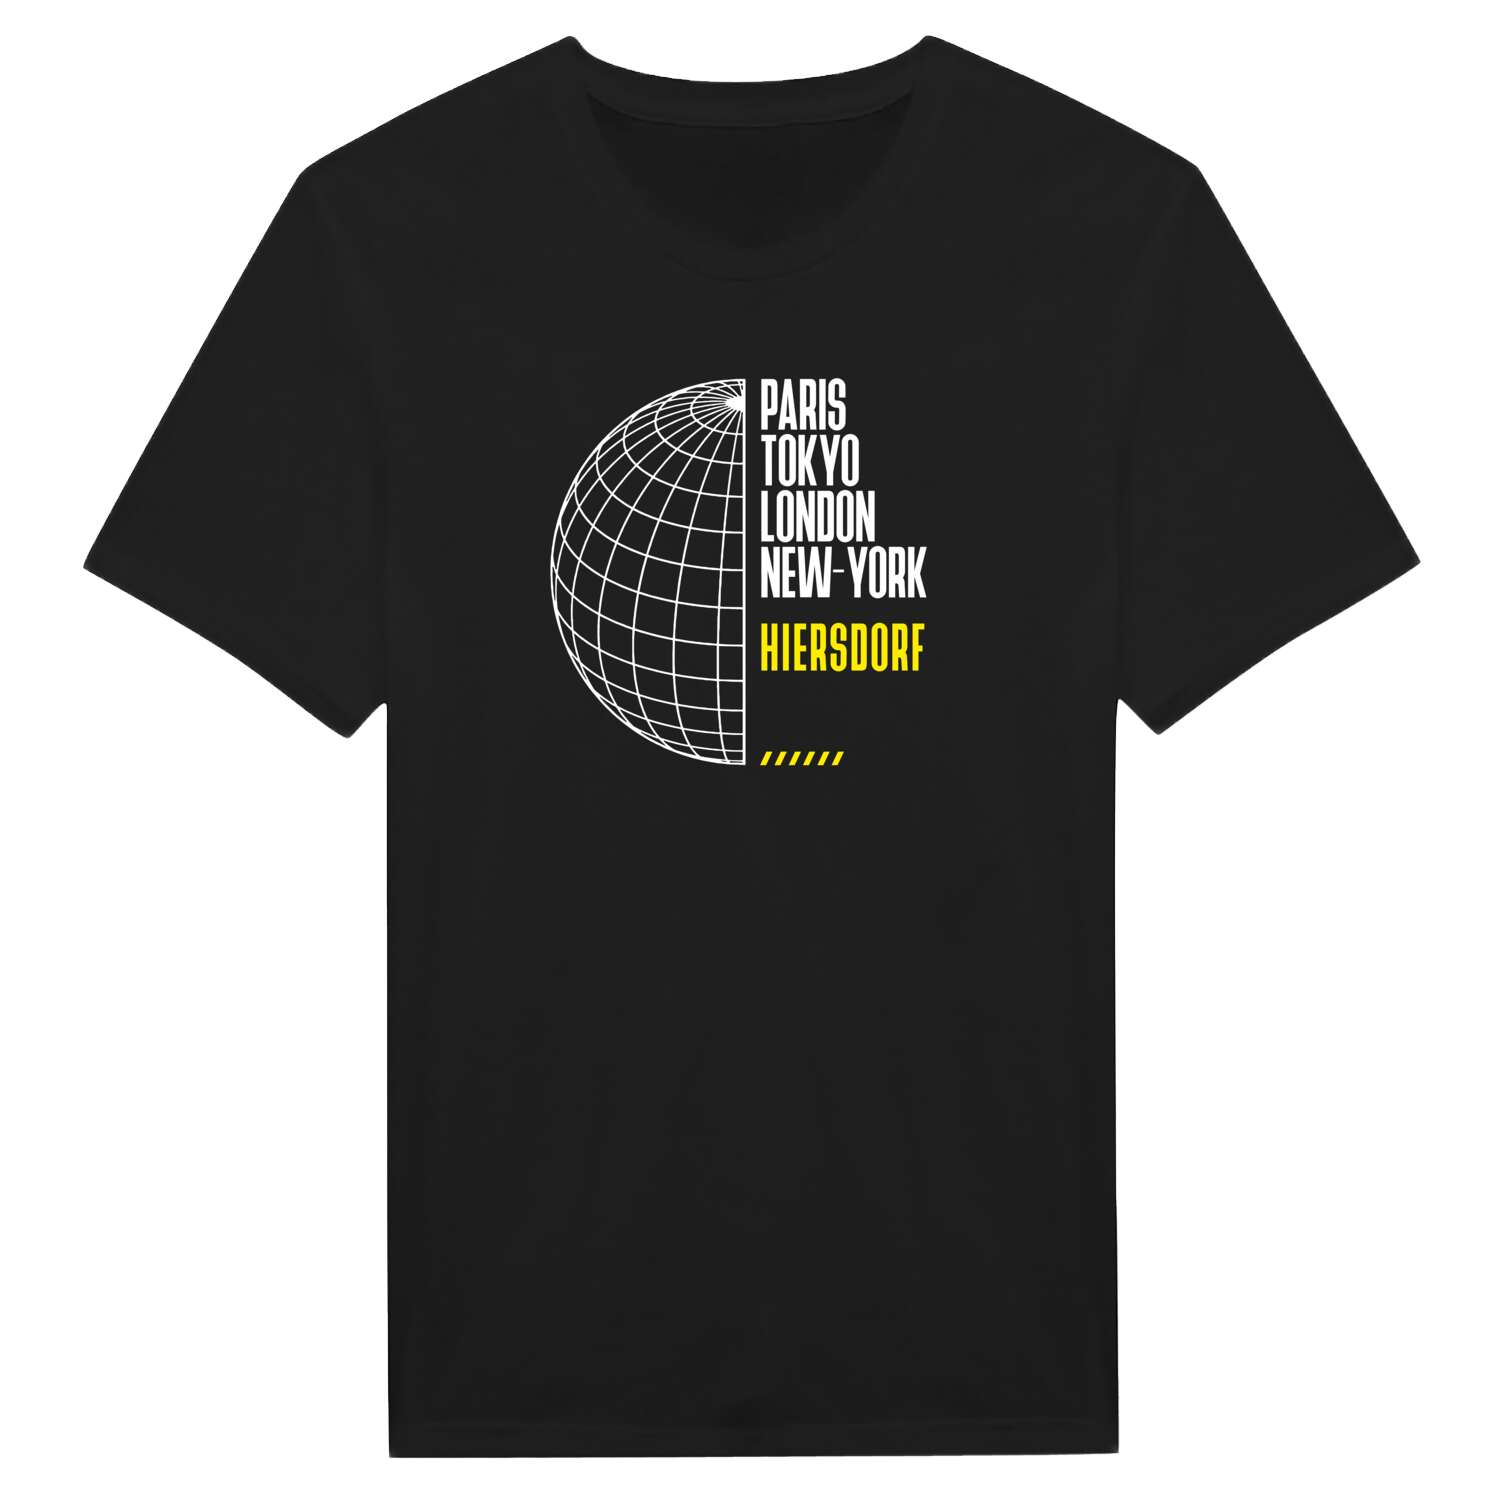 Hiersdorf T-Shirt »Paris Tokyo London«